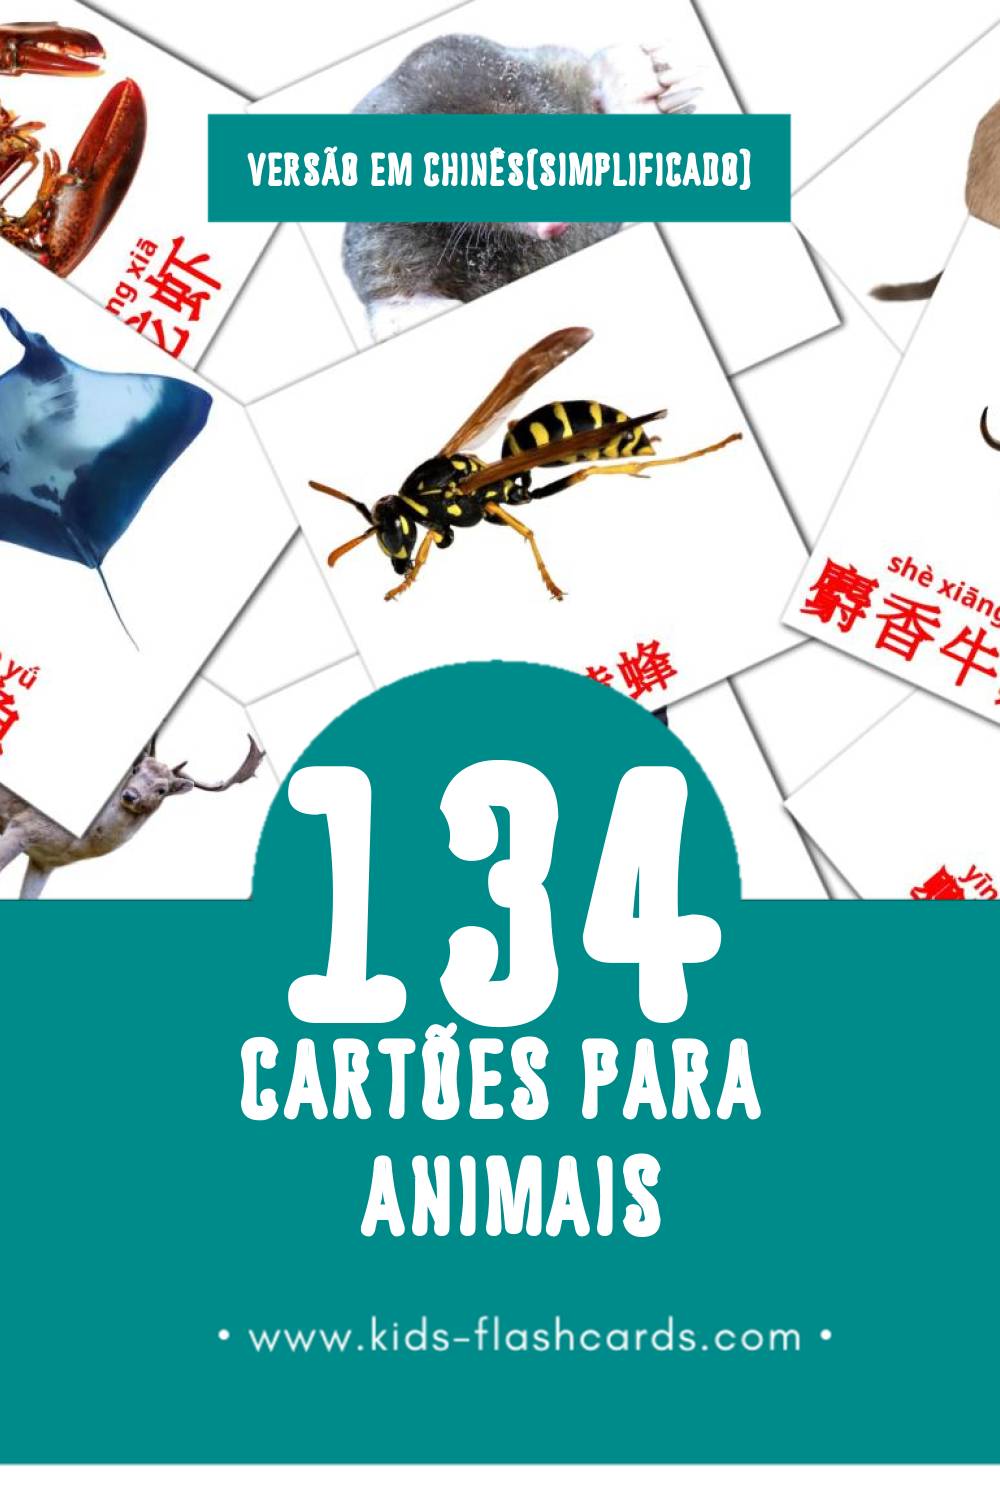 Flashcards de 动物 Visuais para Toddlers (134 cartões em Chinês(simplificado))